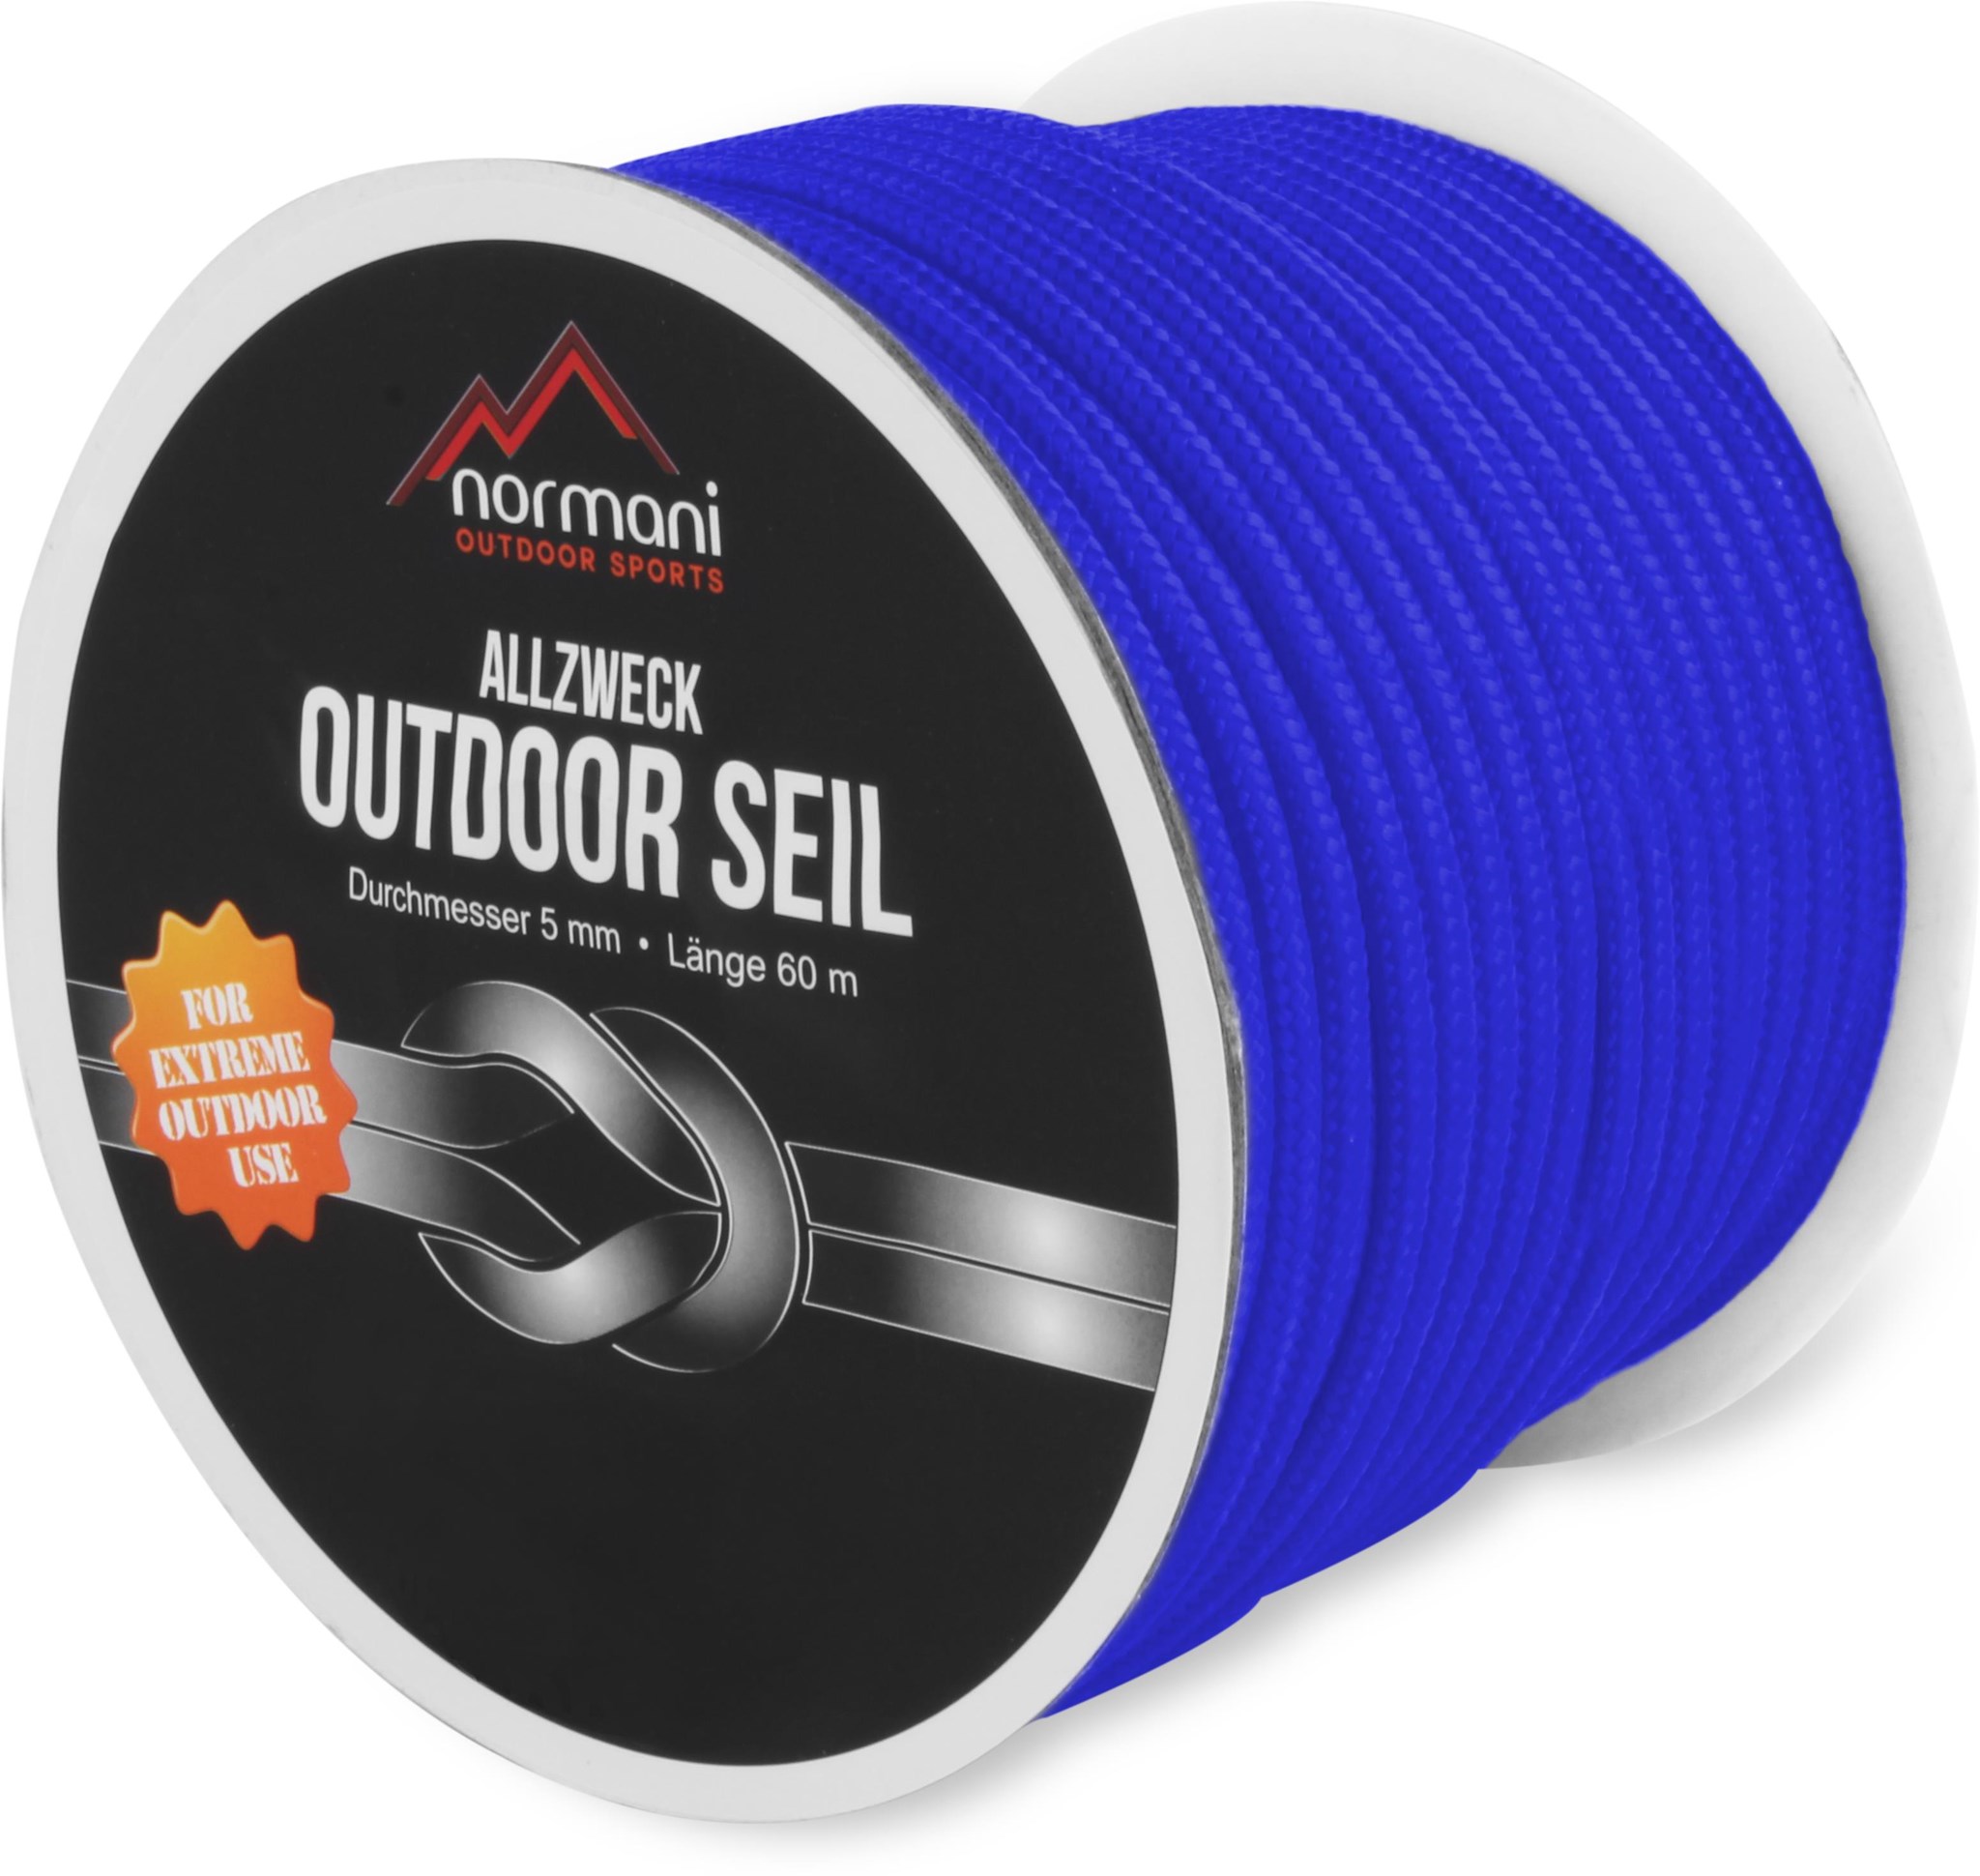 Bild von Allzweck-Outdoor-Seil „Chetwynd“ 5 mm x 60 m Blau